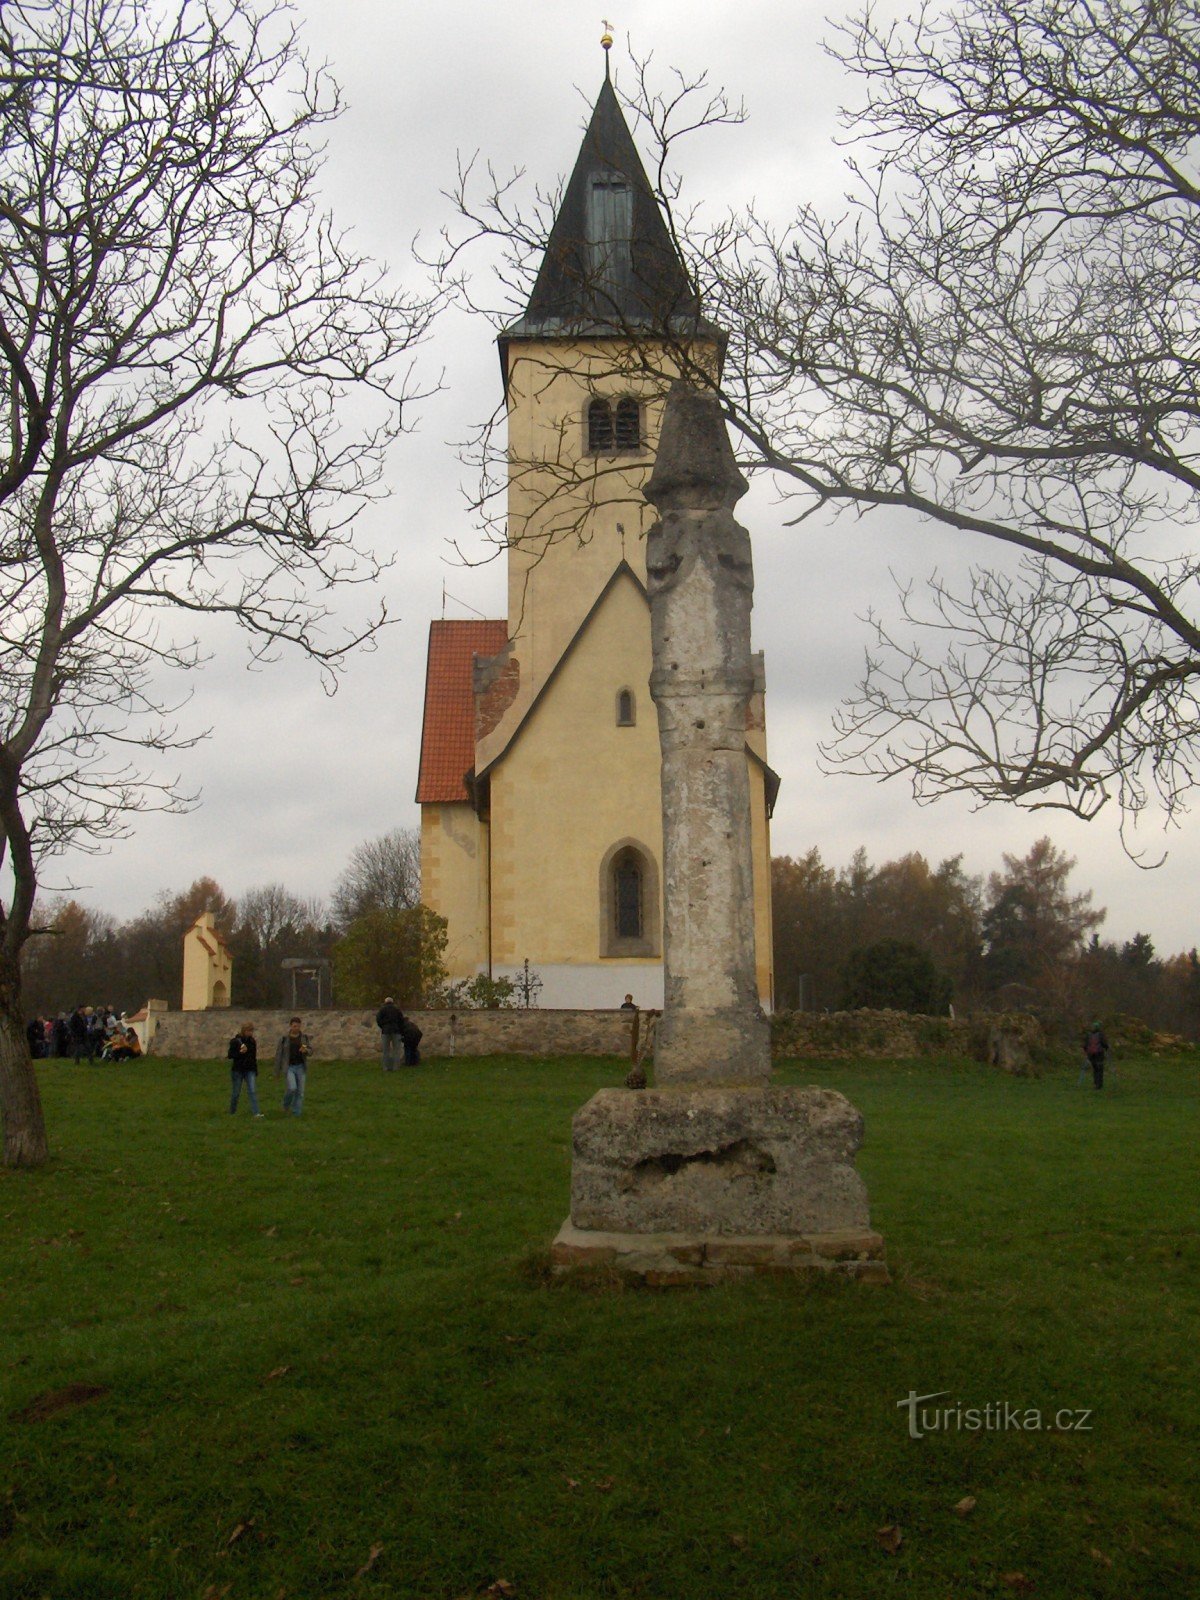 Церковь св. Якуб и Филип в Хвойне.